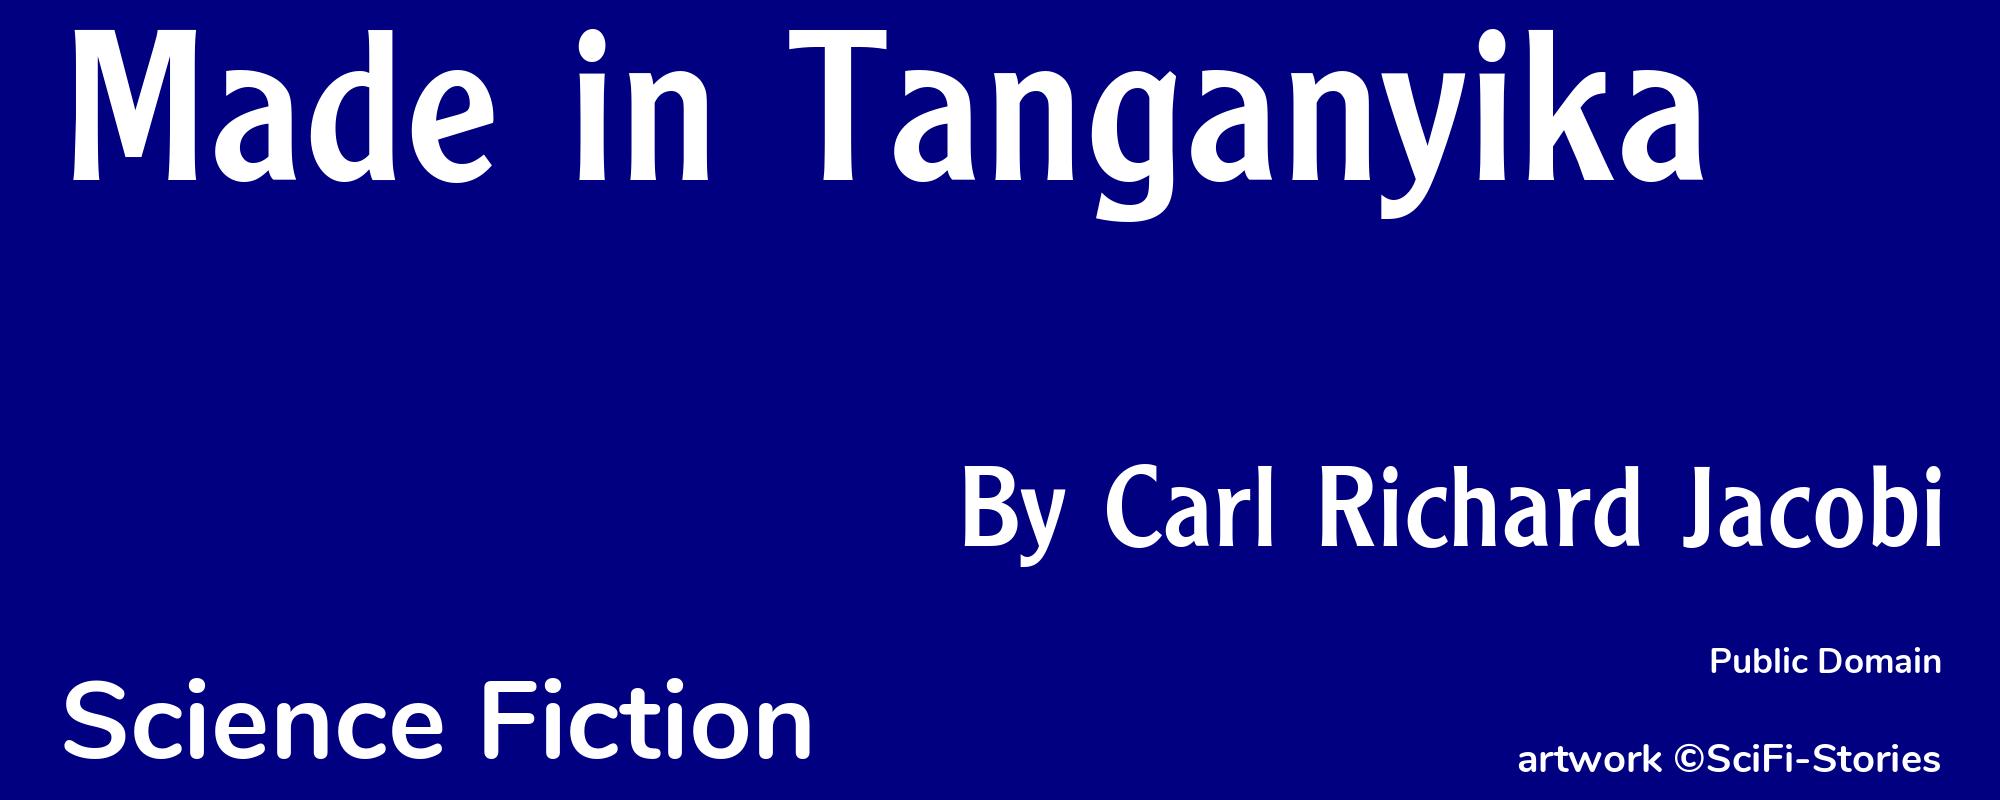 Made in Tanganyika - Cover